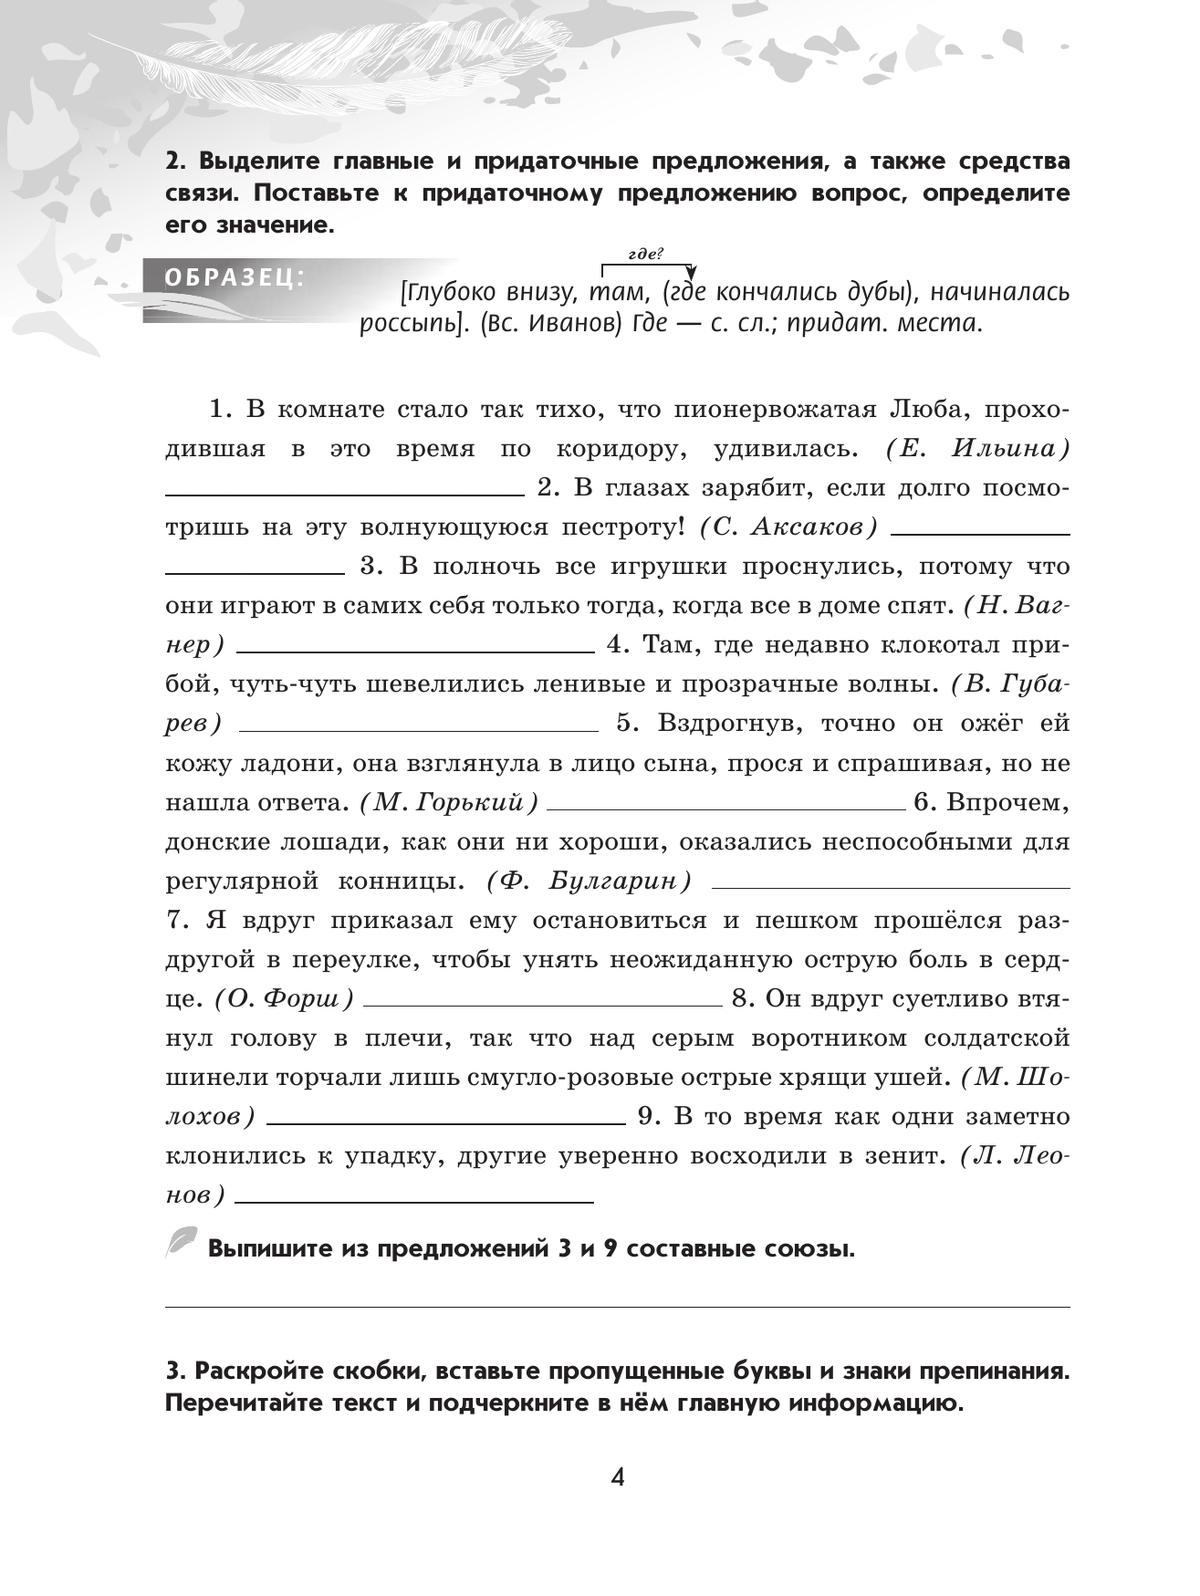 Русский язык. 9 класс. Рабочая тетрадь. Часть 2 4